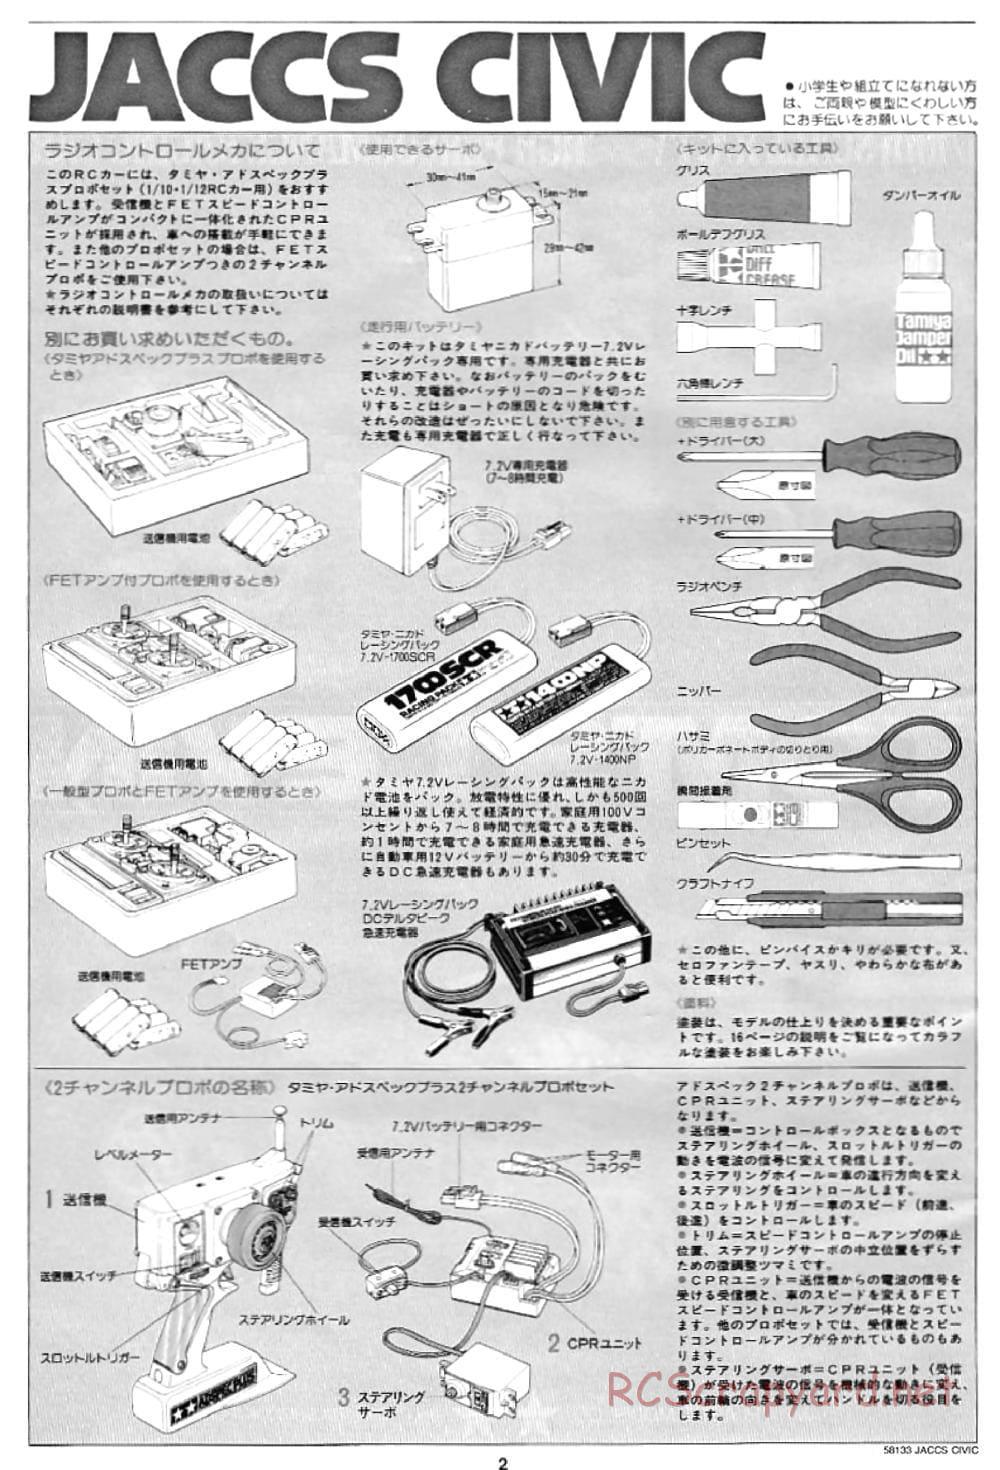 Tamiya - JACCS Honda Civic - FF-01 Chassis - Manual - Page 2